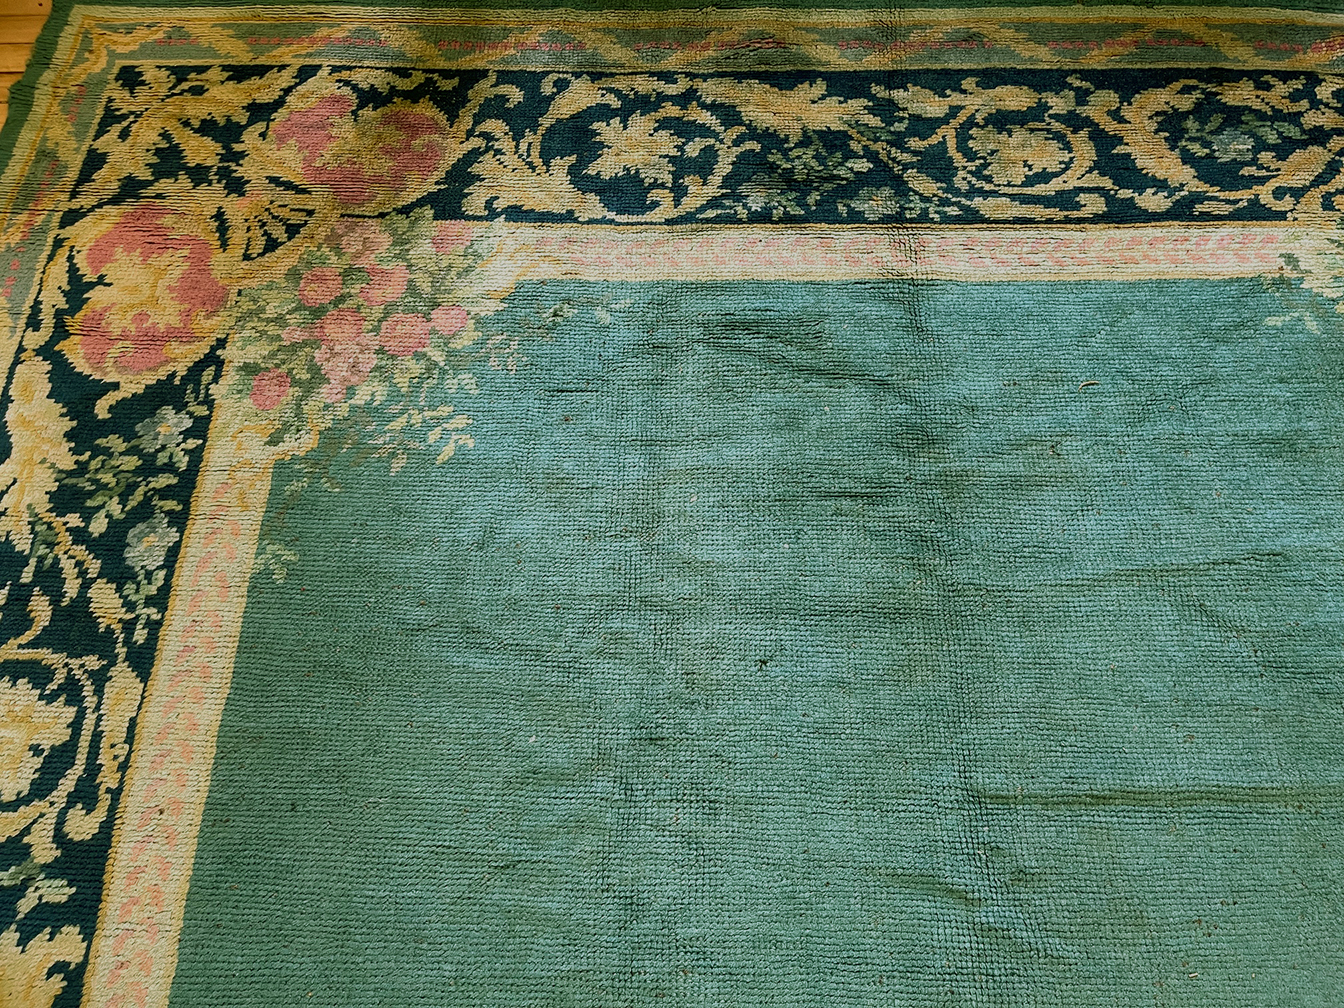 Antique donegal Carpet - # 57526